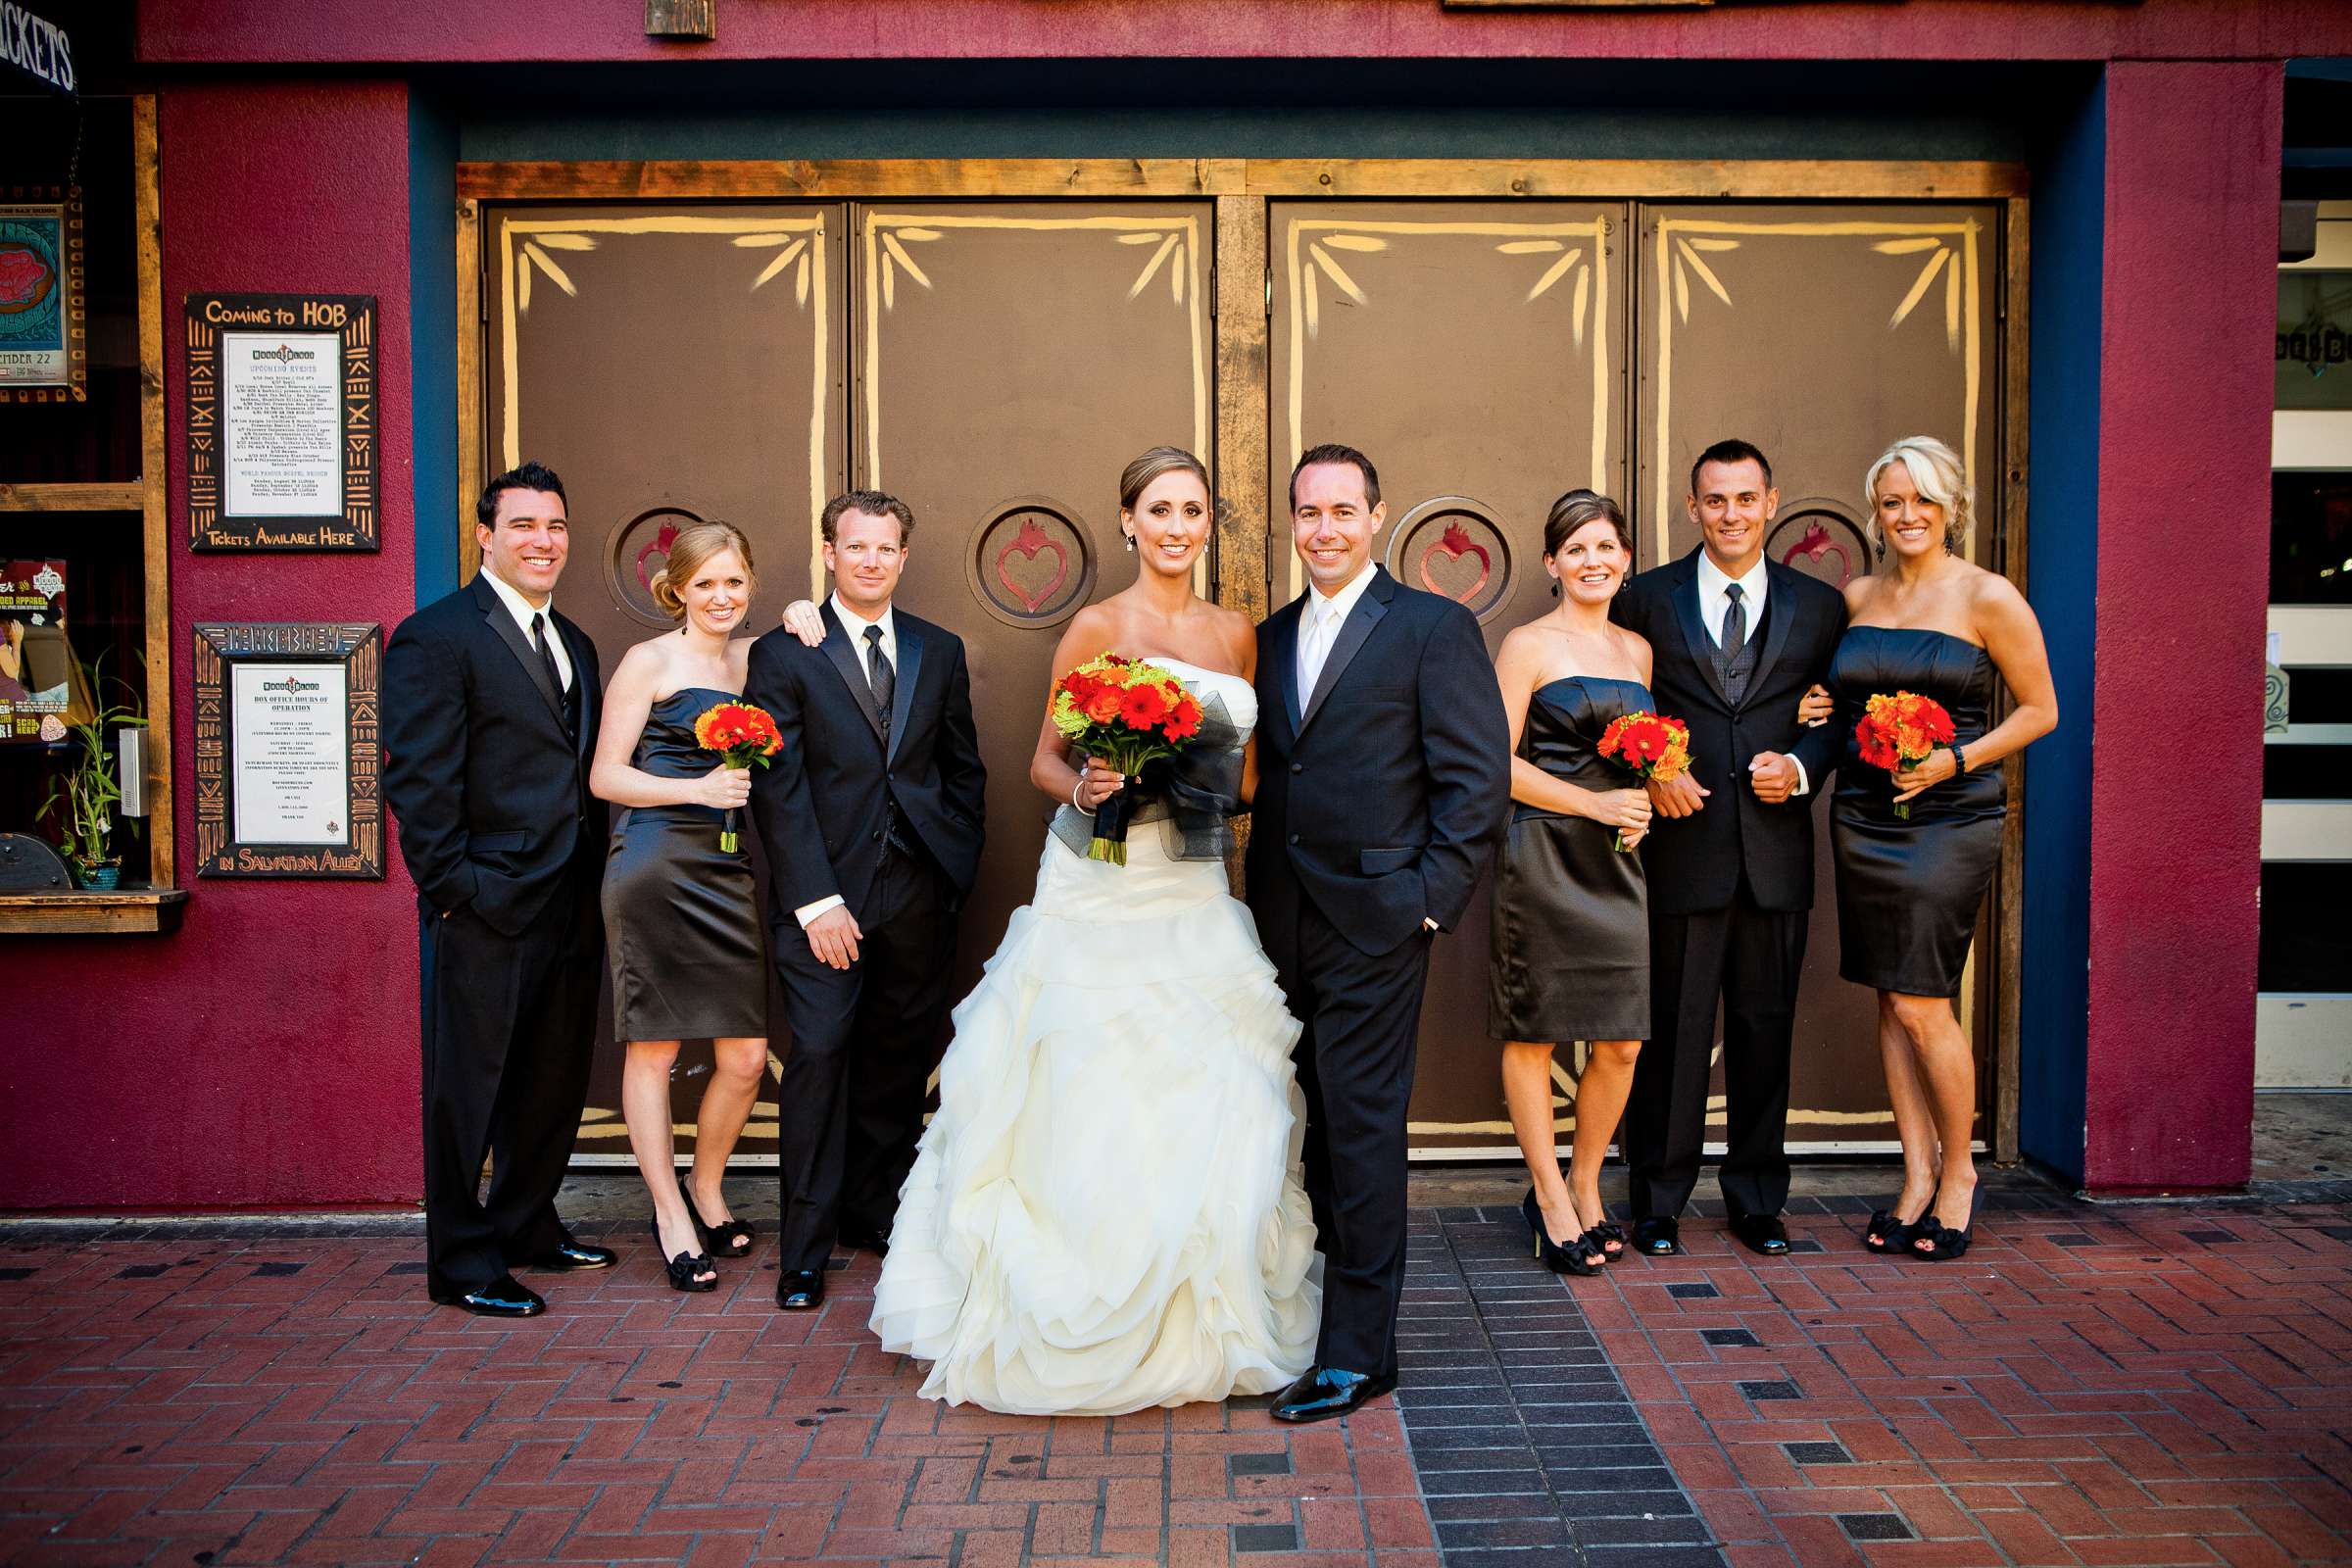 Hotel Palomar San Diego Wedding, Liz and Jeff Wedding Photo #205369 by True Photography